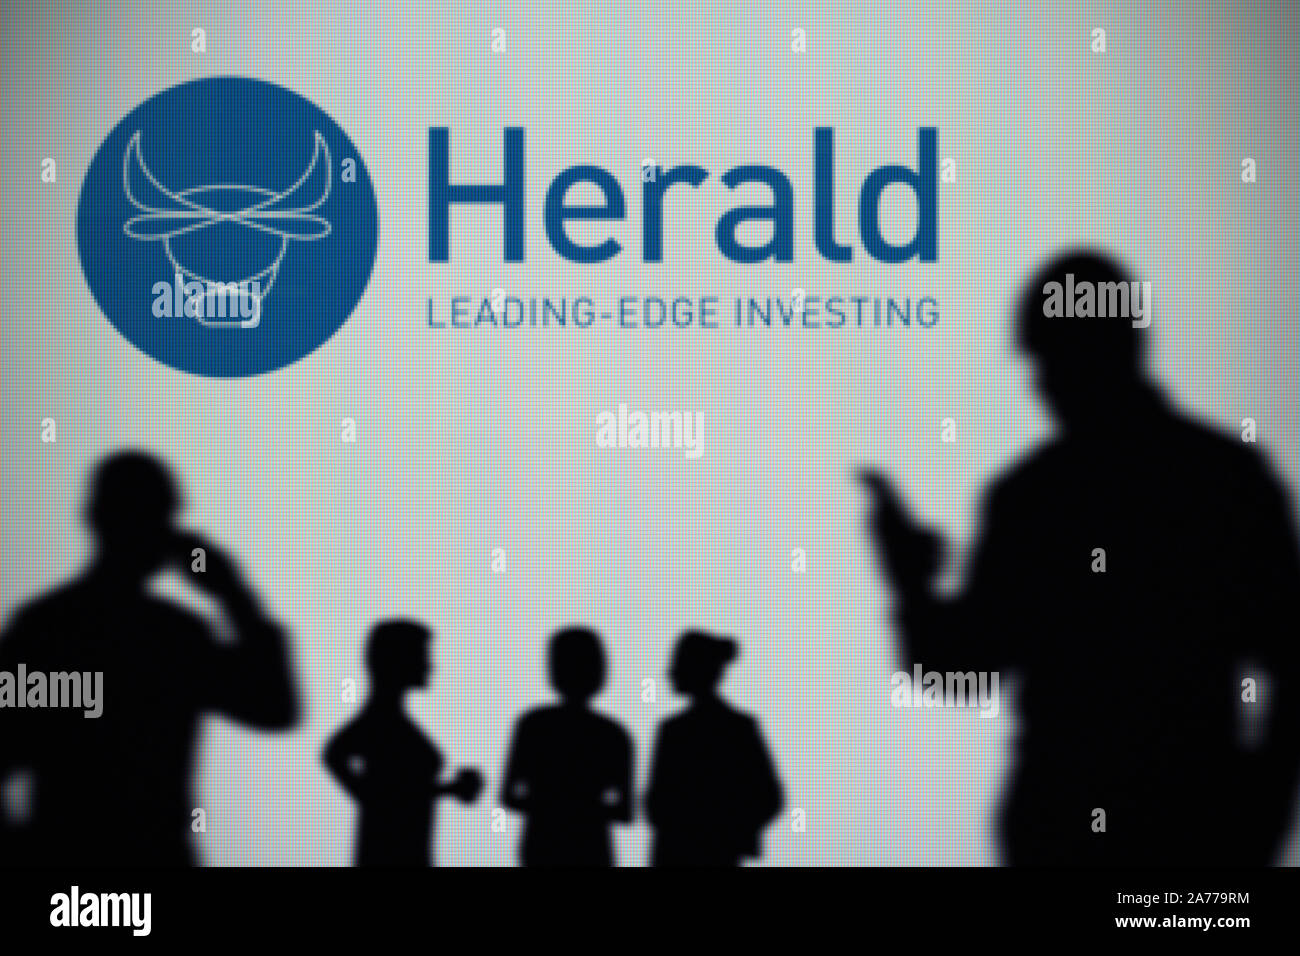 Der Herald Investment Trust Logo ist auf einen LED-Bildschirm im Hintergrund, während eine Silhouette Person ein Smartphone verwendet (nur redaktionelle Nutzung) Stockfoto